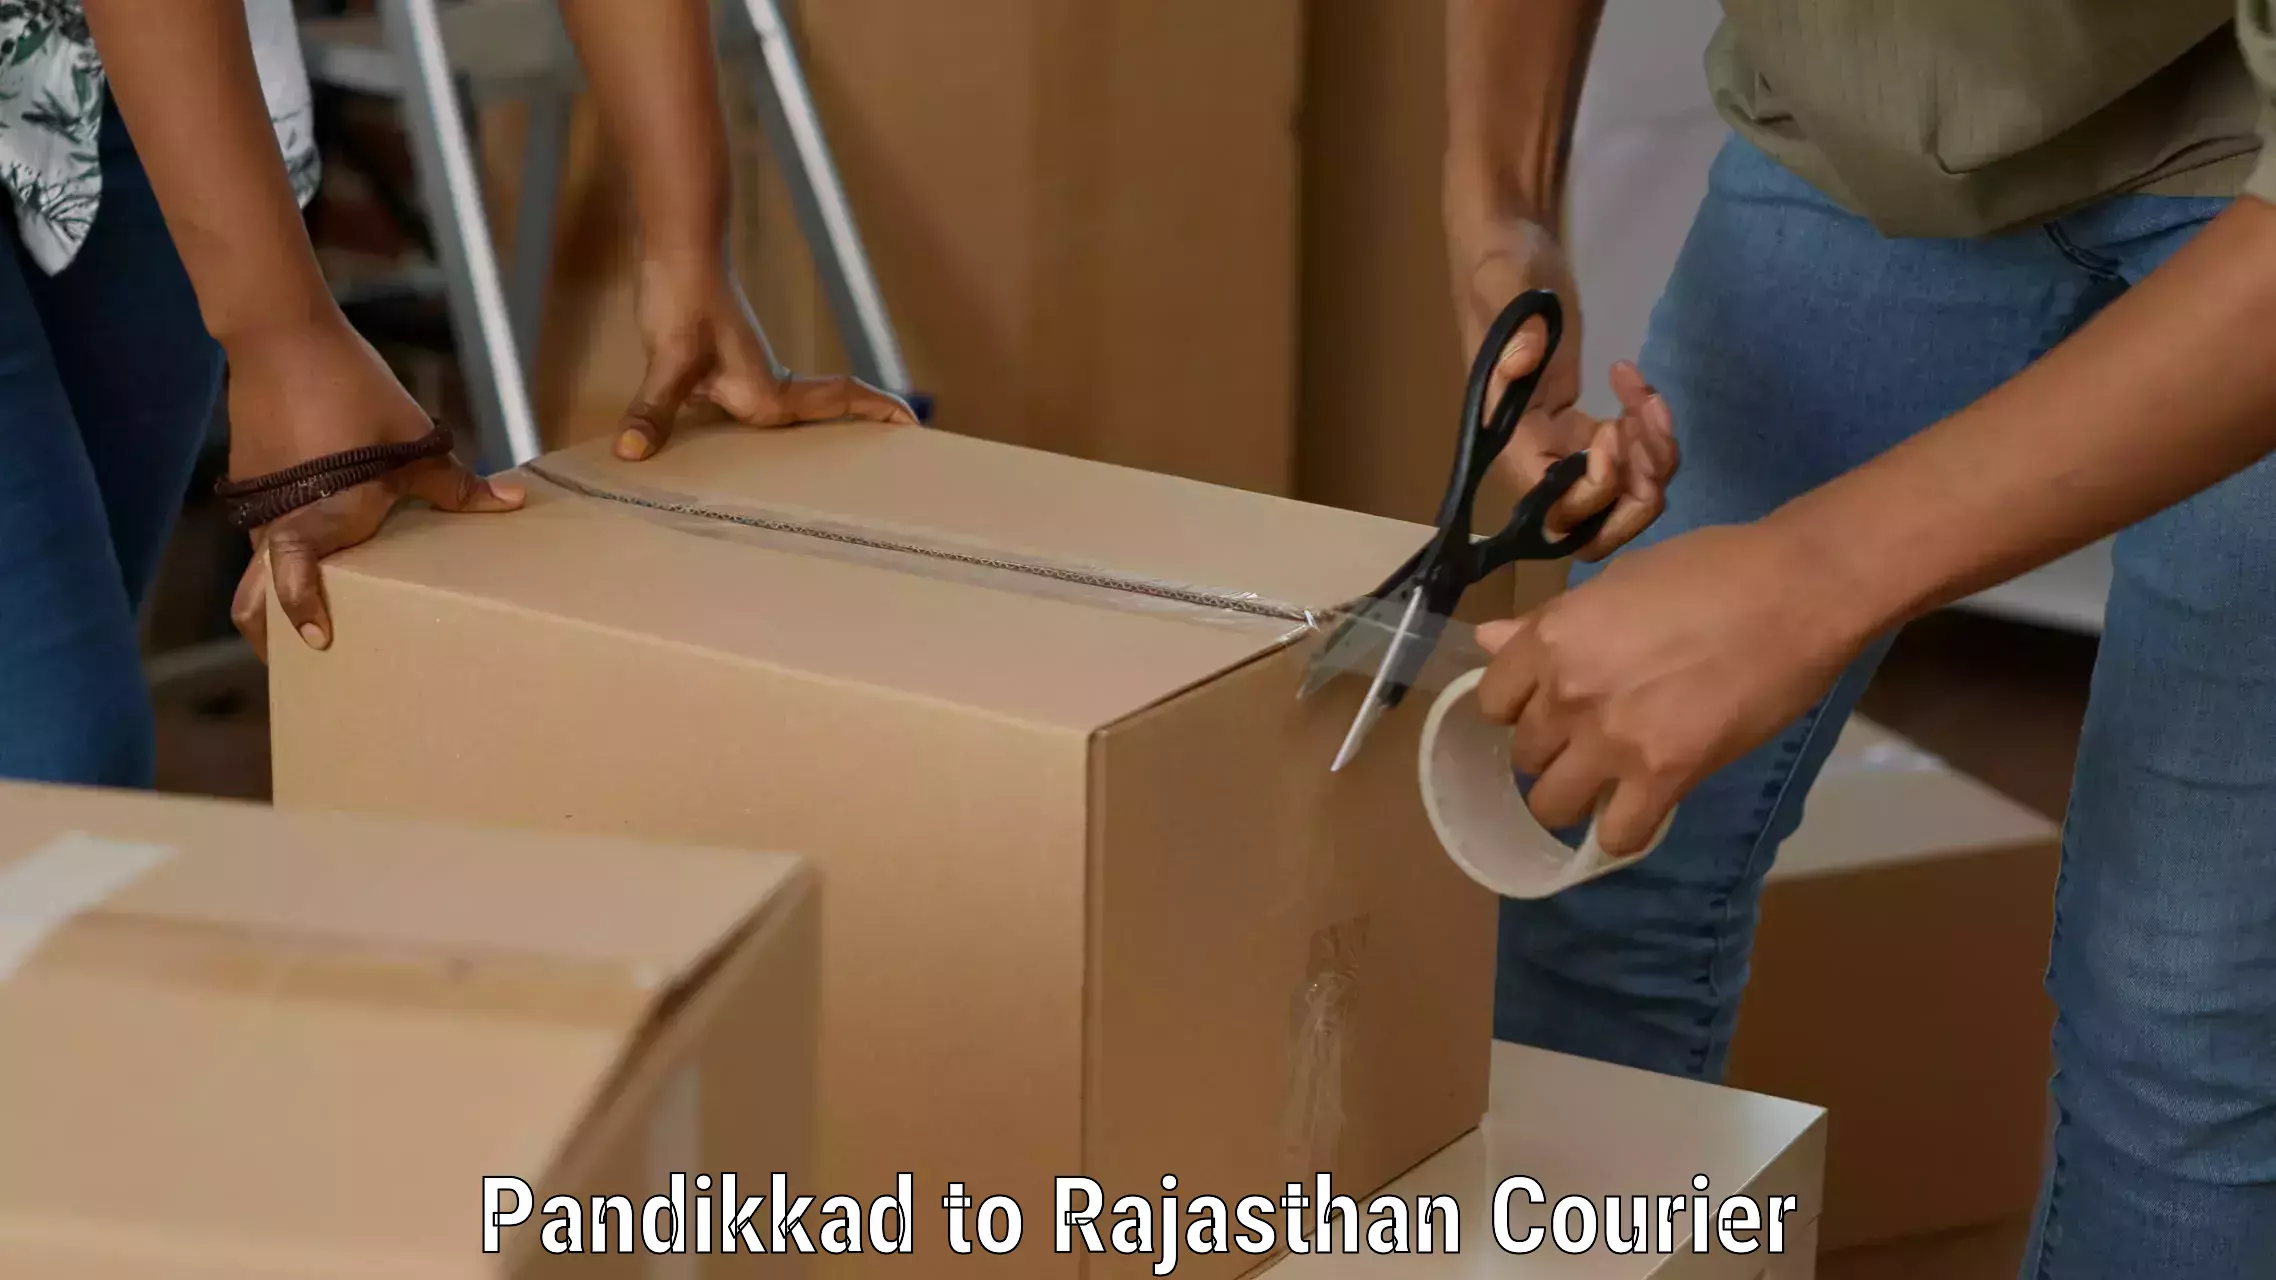 Versatile courier offerings Pandikkad to Neem ka Thana